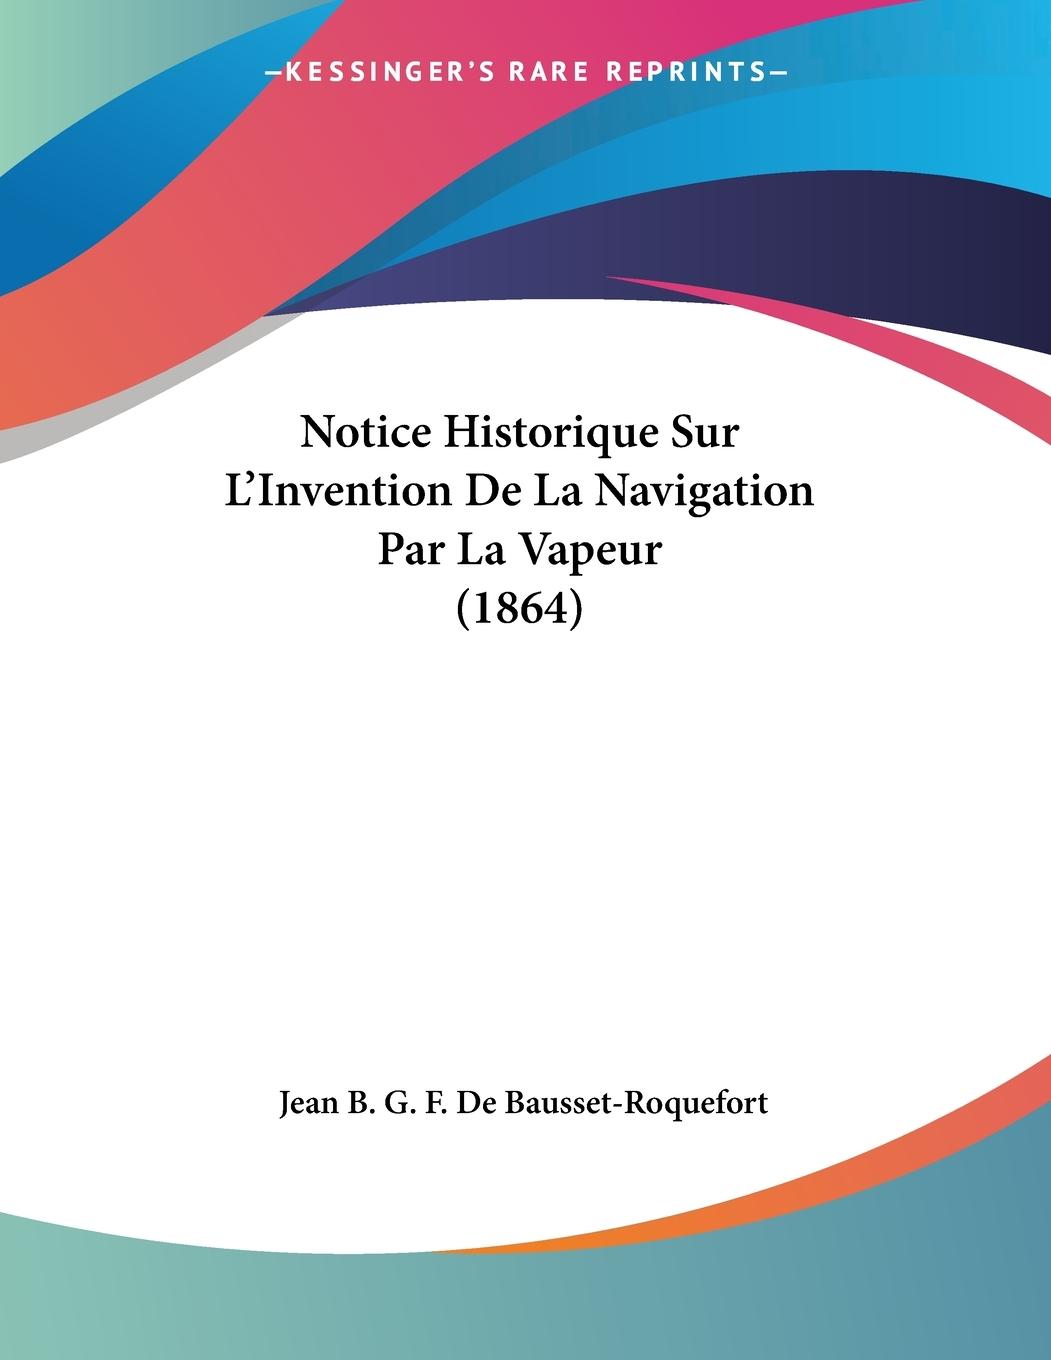 Notice Historique Sur L Invention De La Navigation Par La Vapeur (1864) - De Bausset-Roquefort, Jean B. G. F.